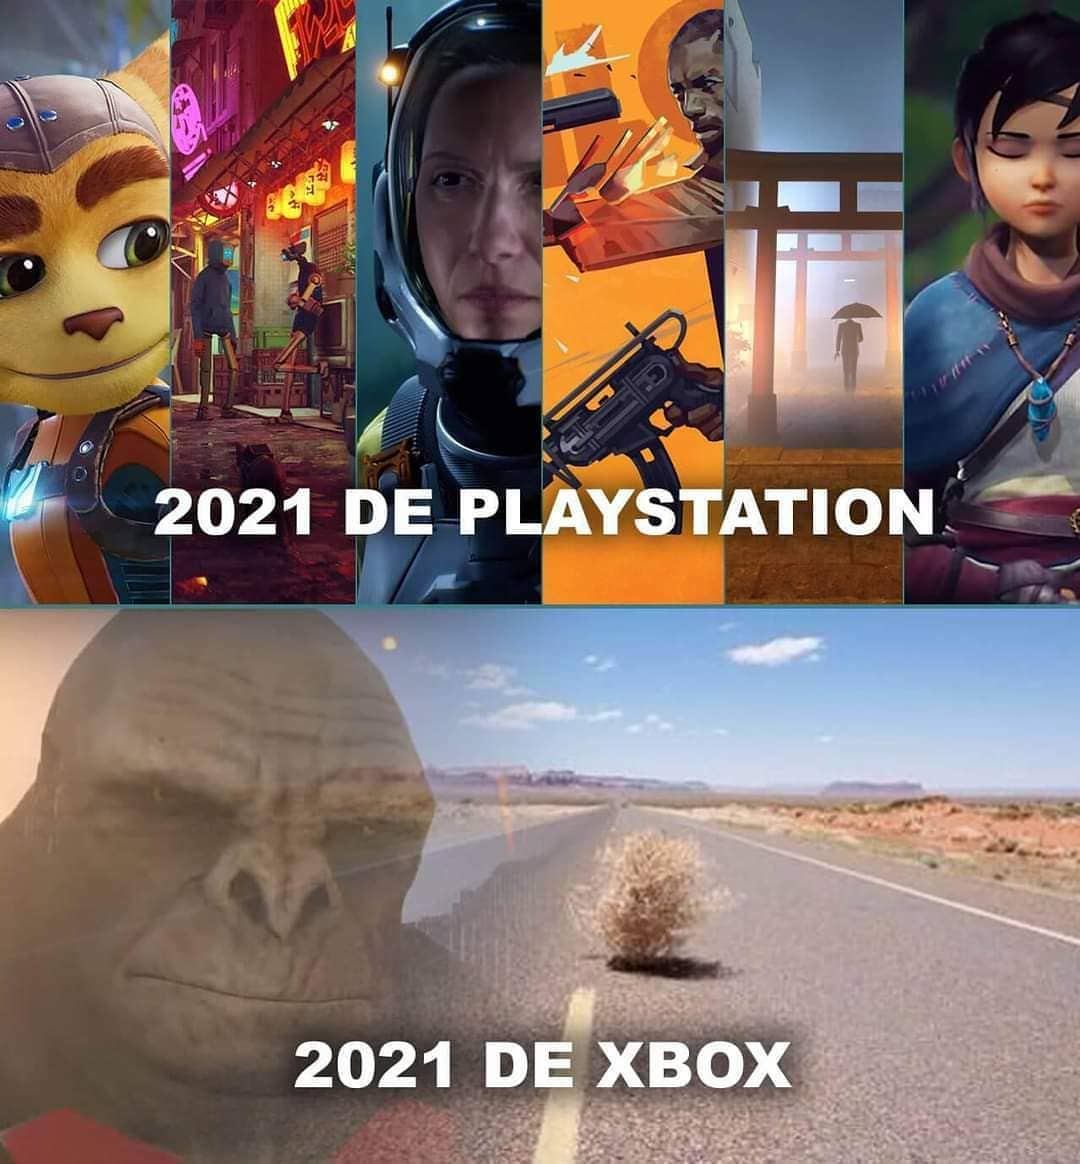 2021 de playstation. 2021 de xbox.